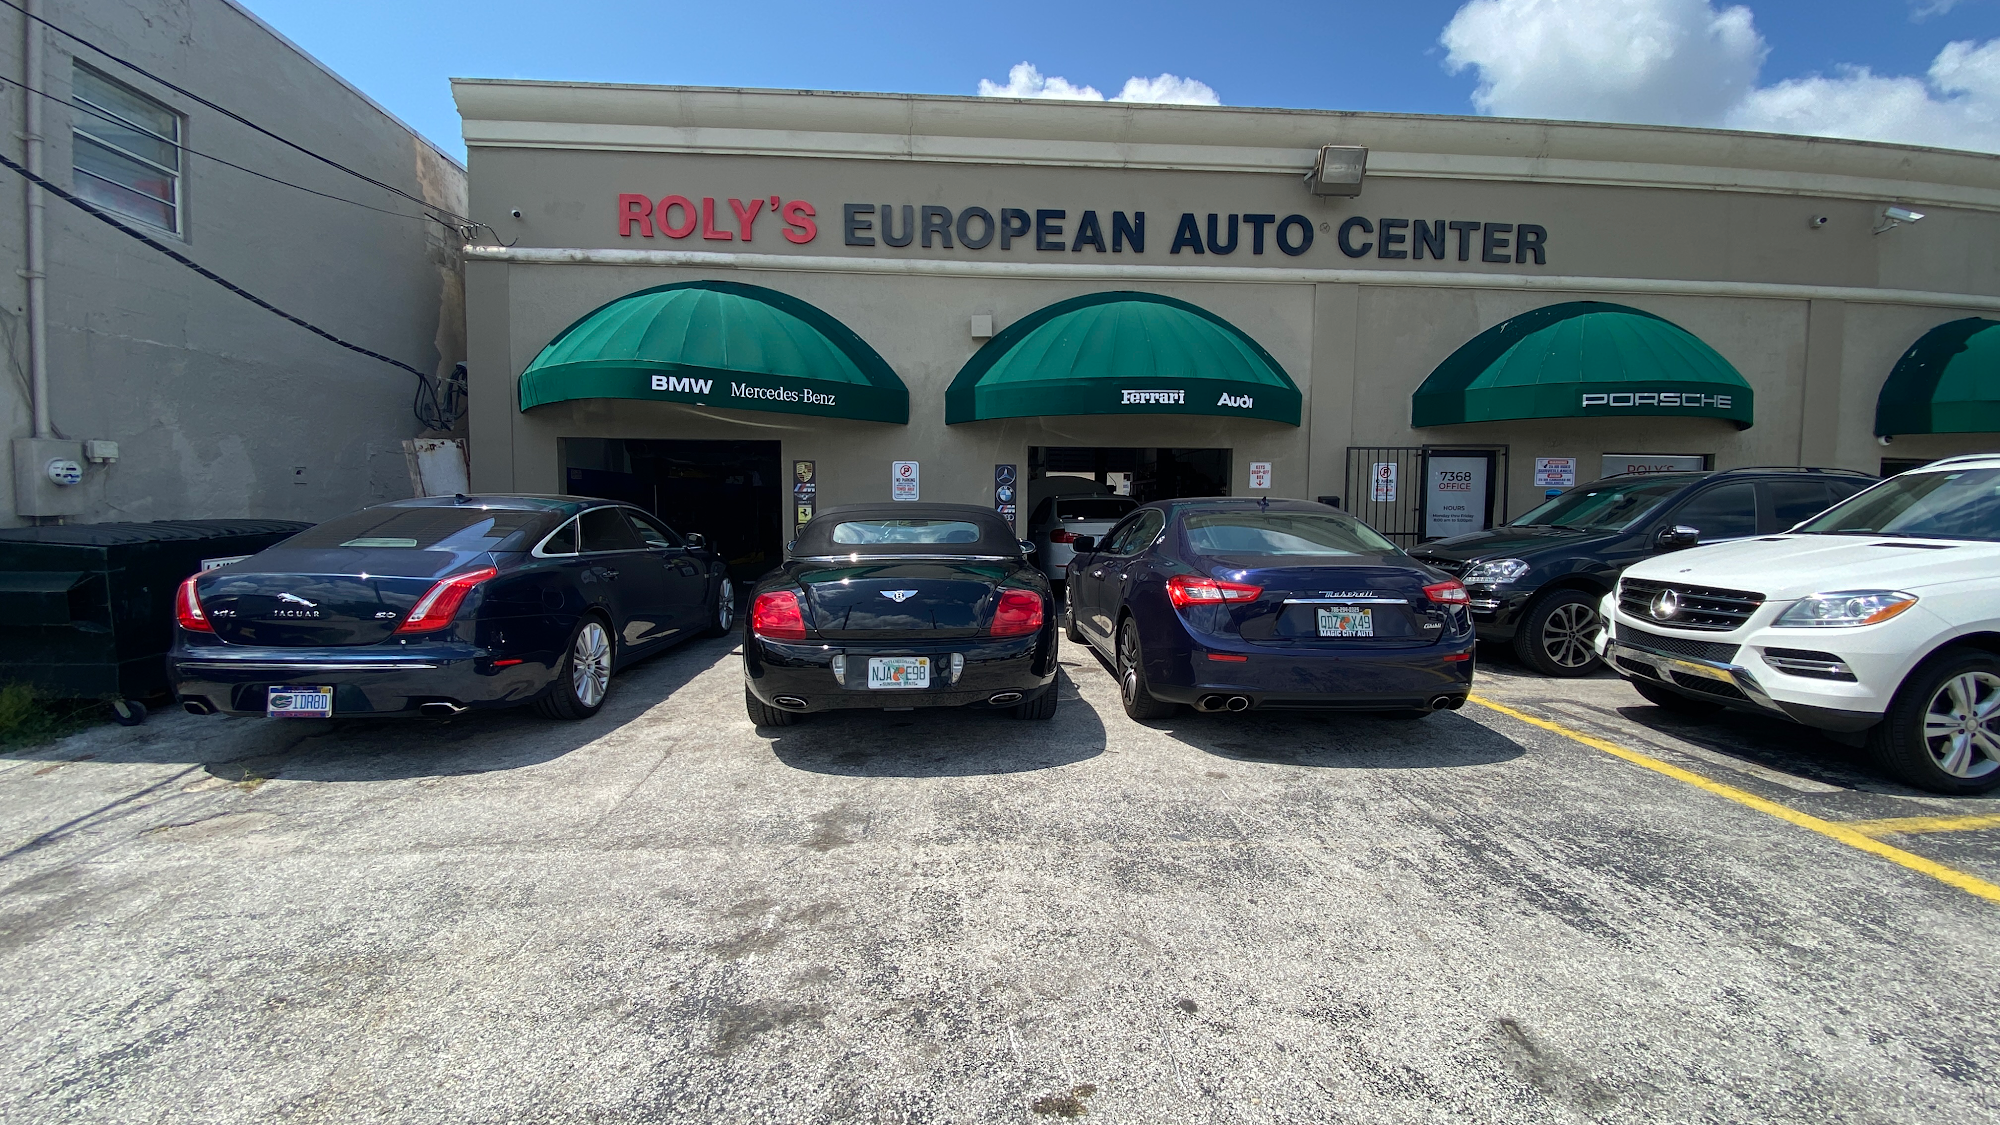 ROLY’S EUROPEAN AUTO CENTER, Bmw, Mercedes, Audi, Porsche, Jaguar, Range Rover Repair Shop